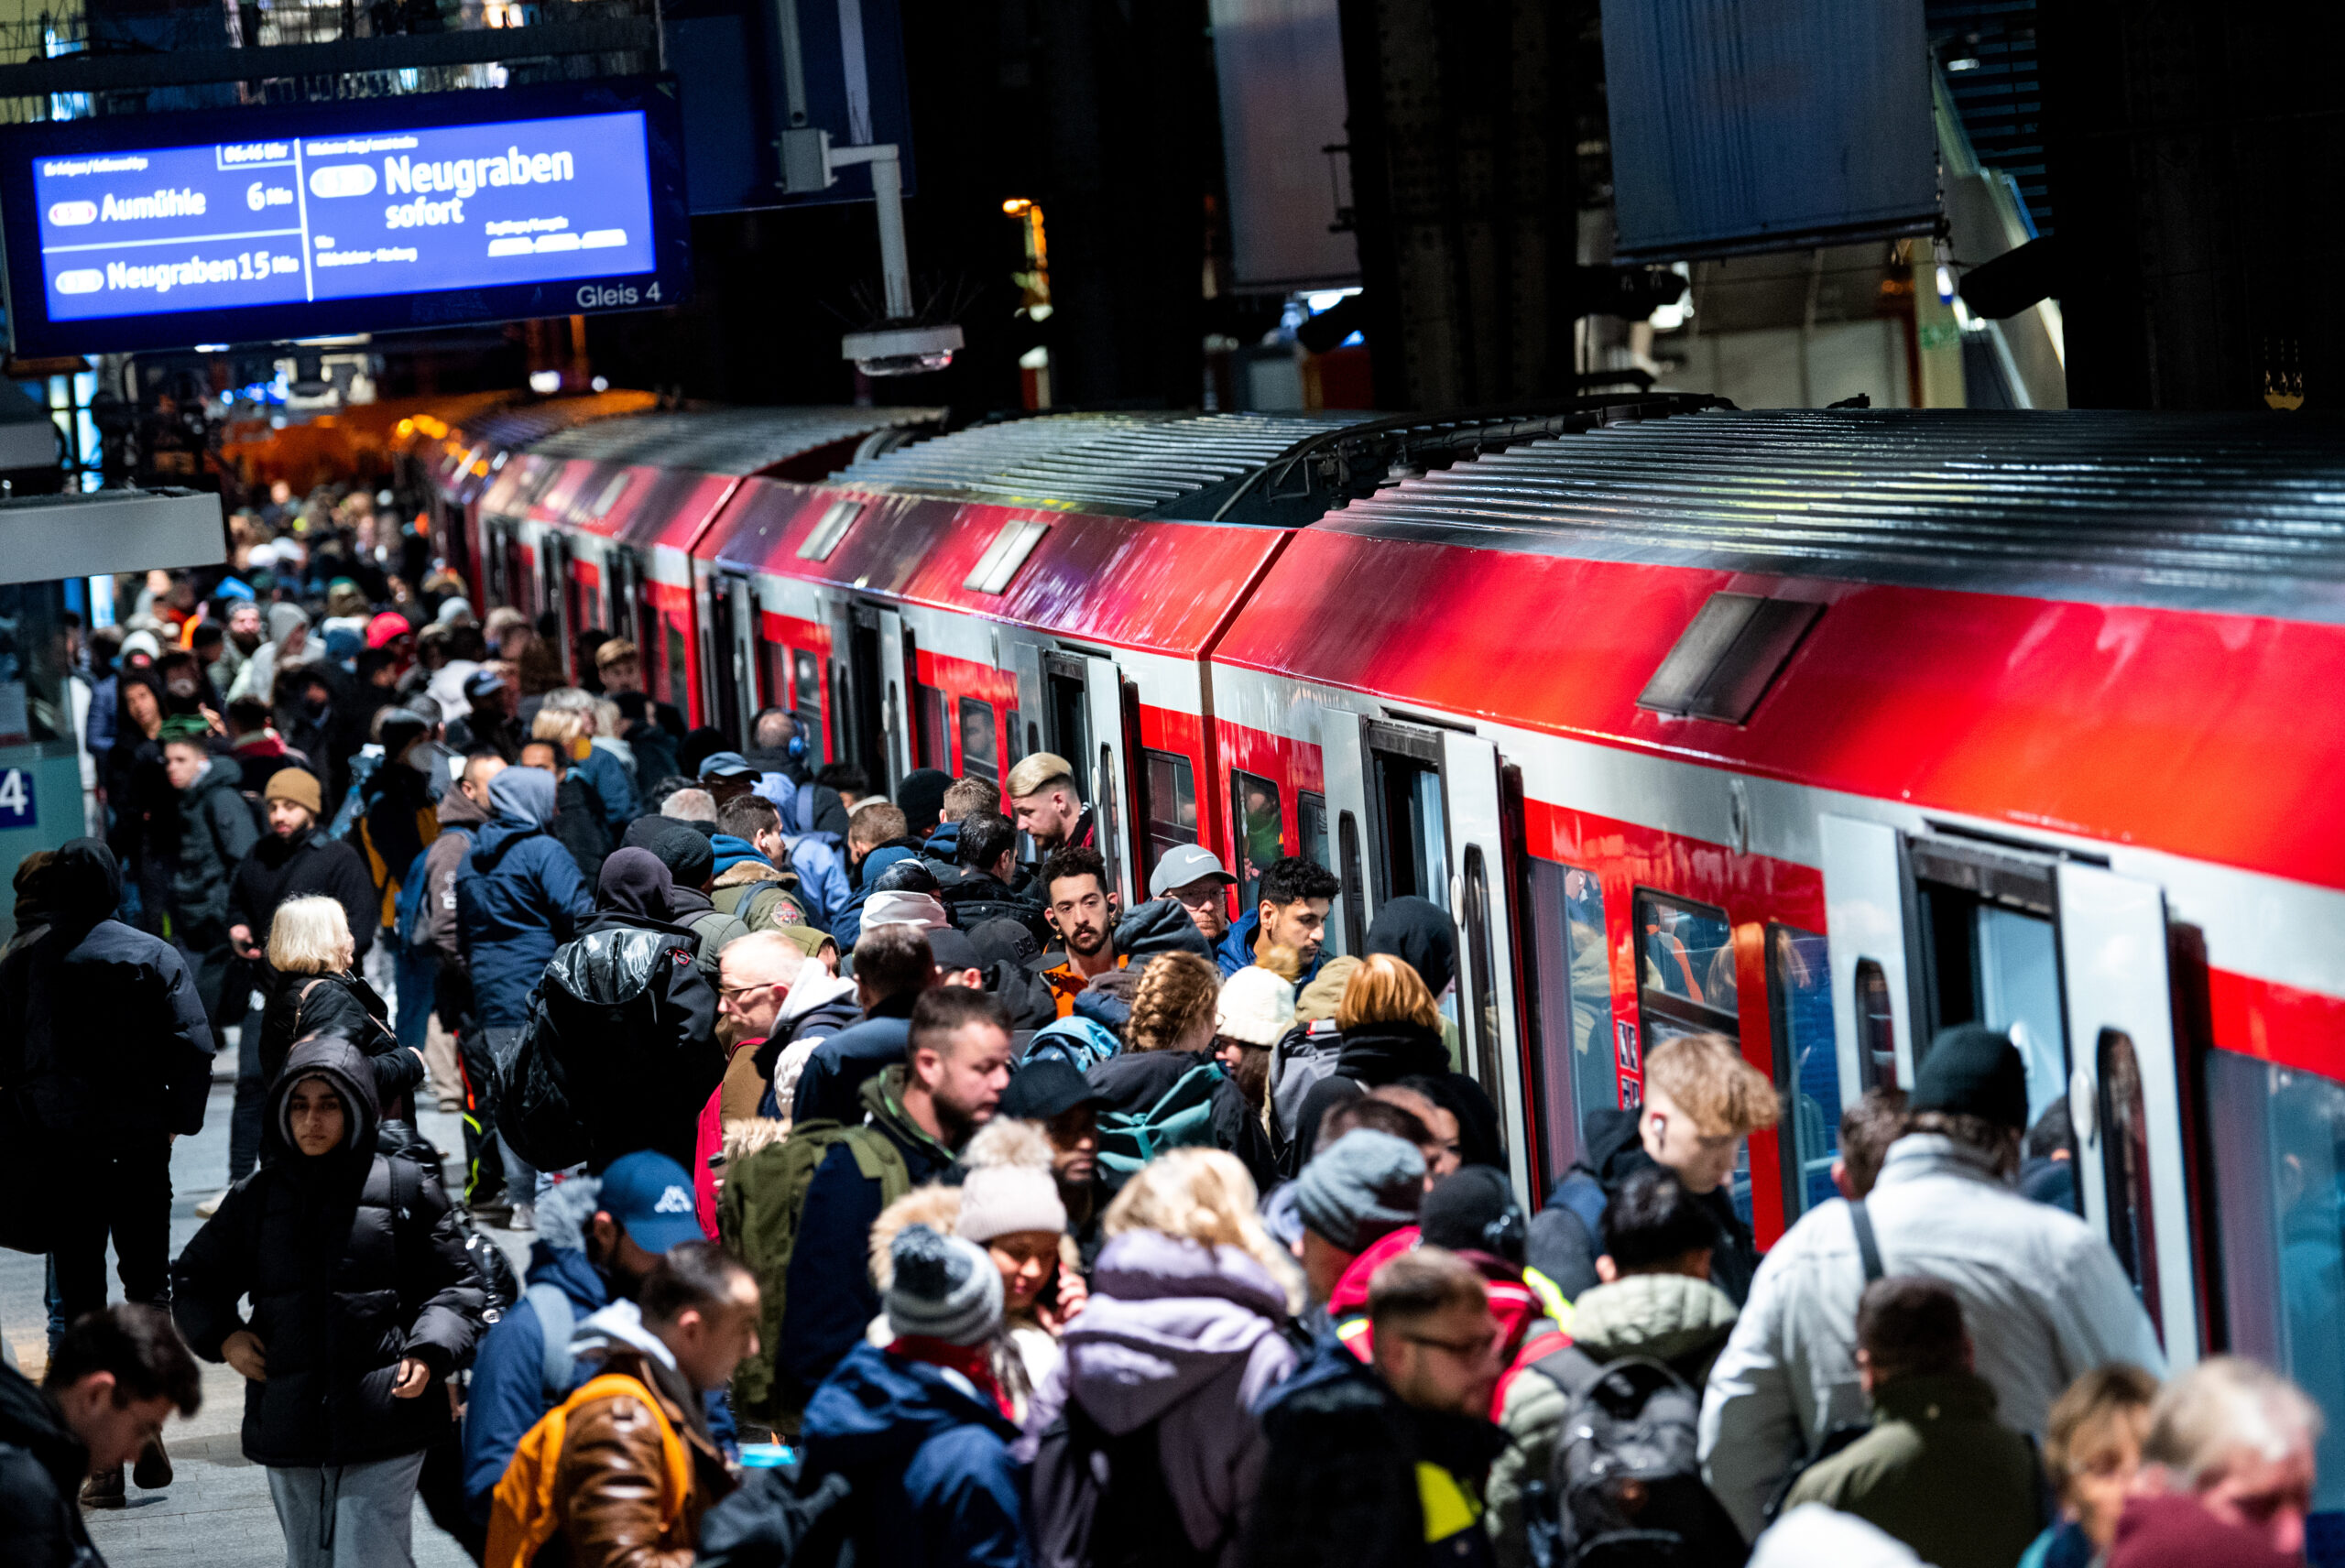 Reisende drängten sich während des Warnstreiks bei der Bahn im Hamburger Hauptbahnhof an einer S-Bahn.